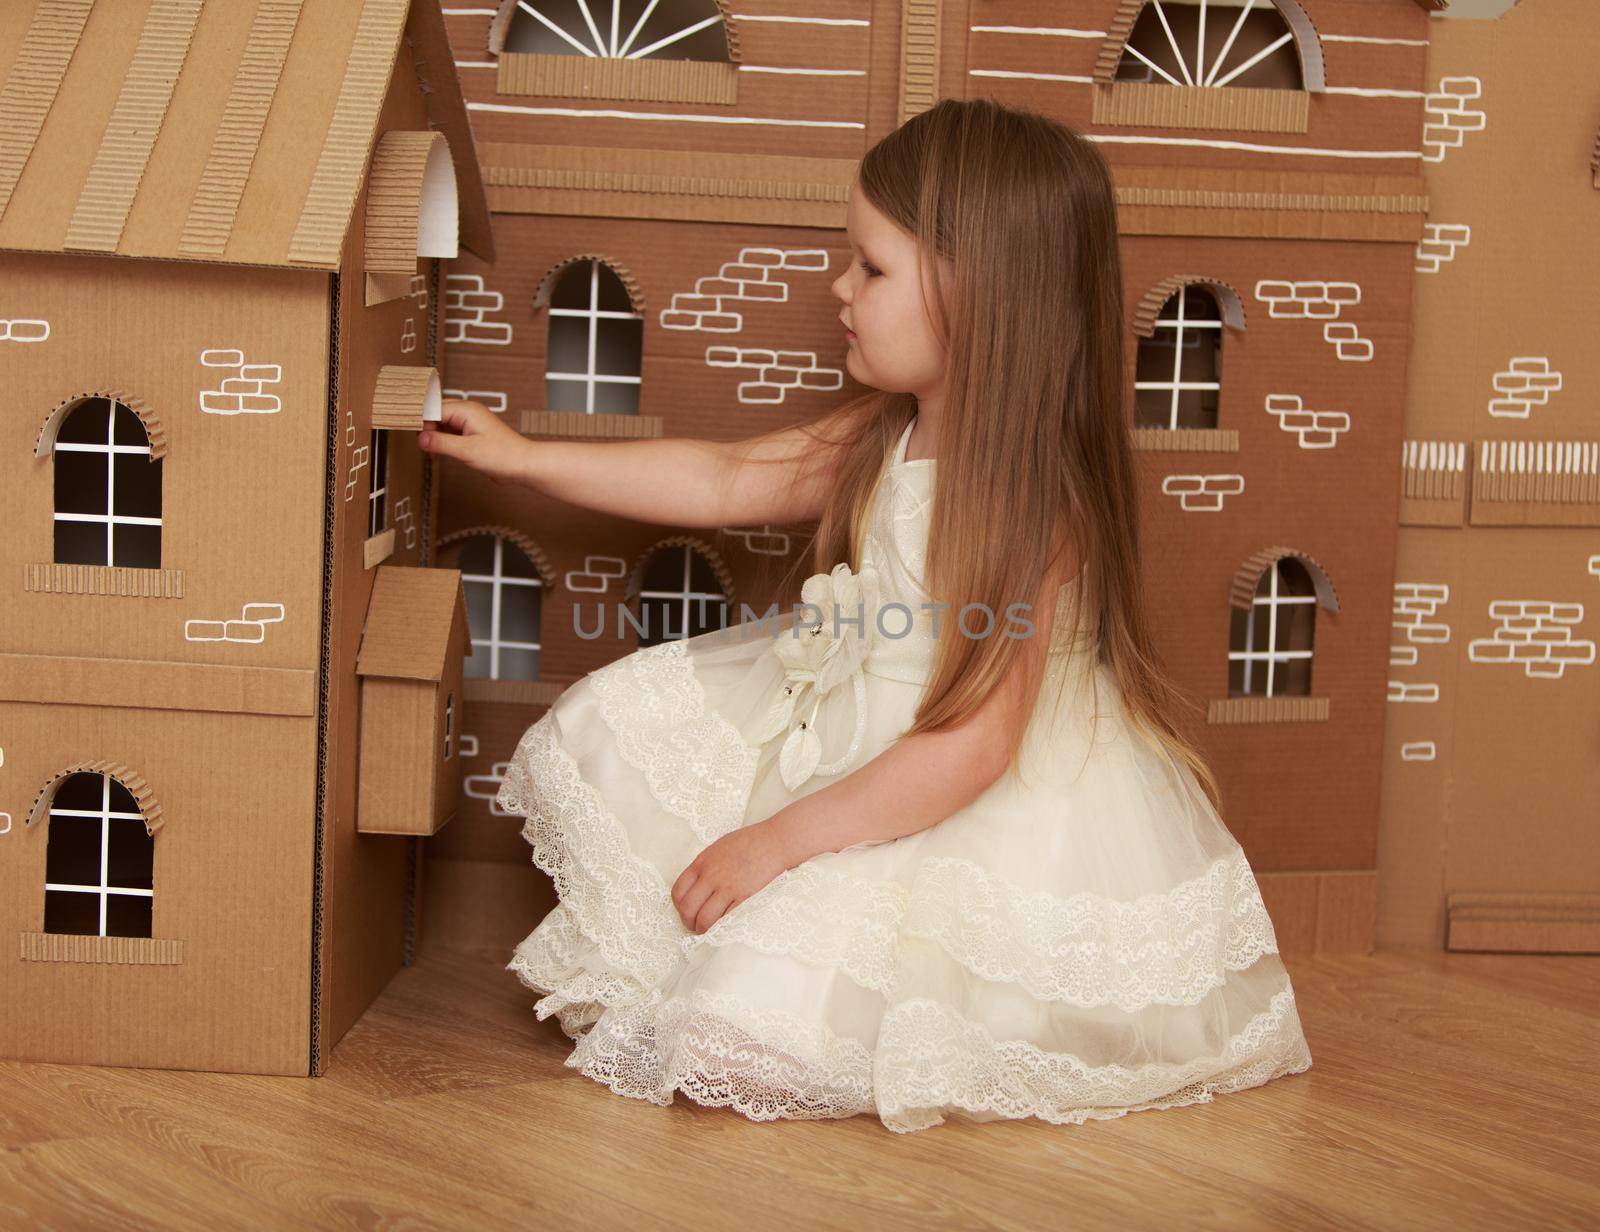 The girl in the Dollhouse by kolesnikov_studio